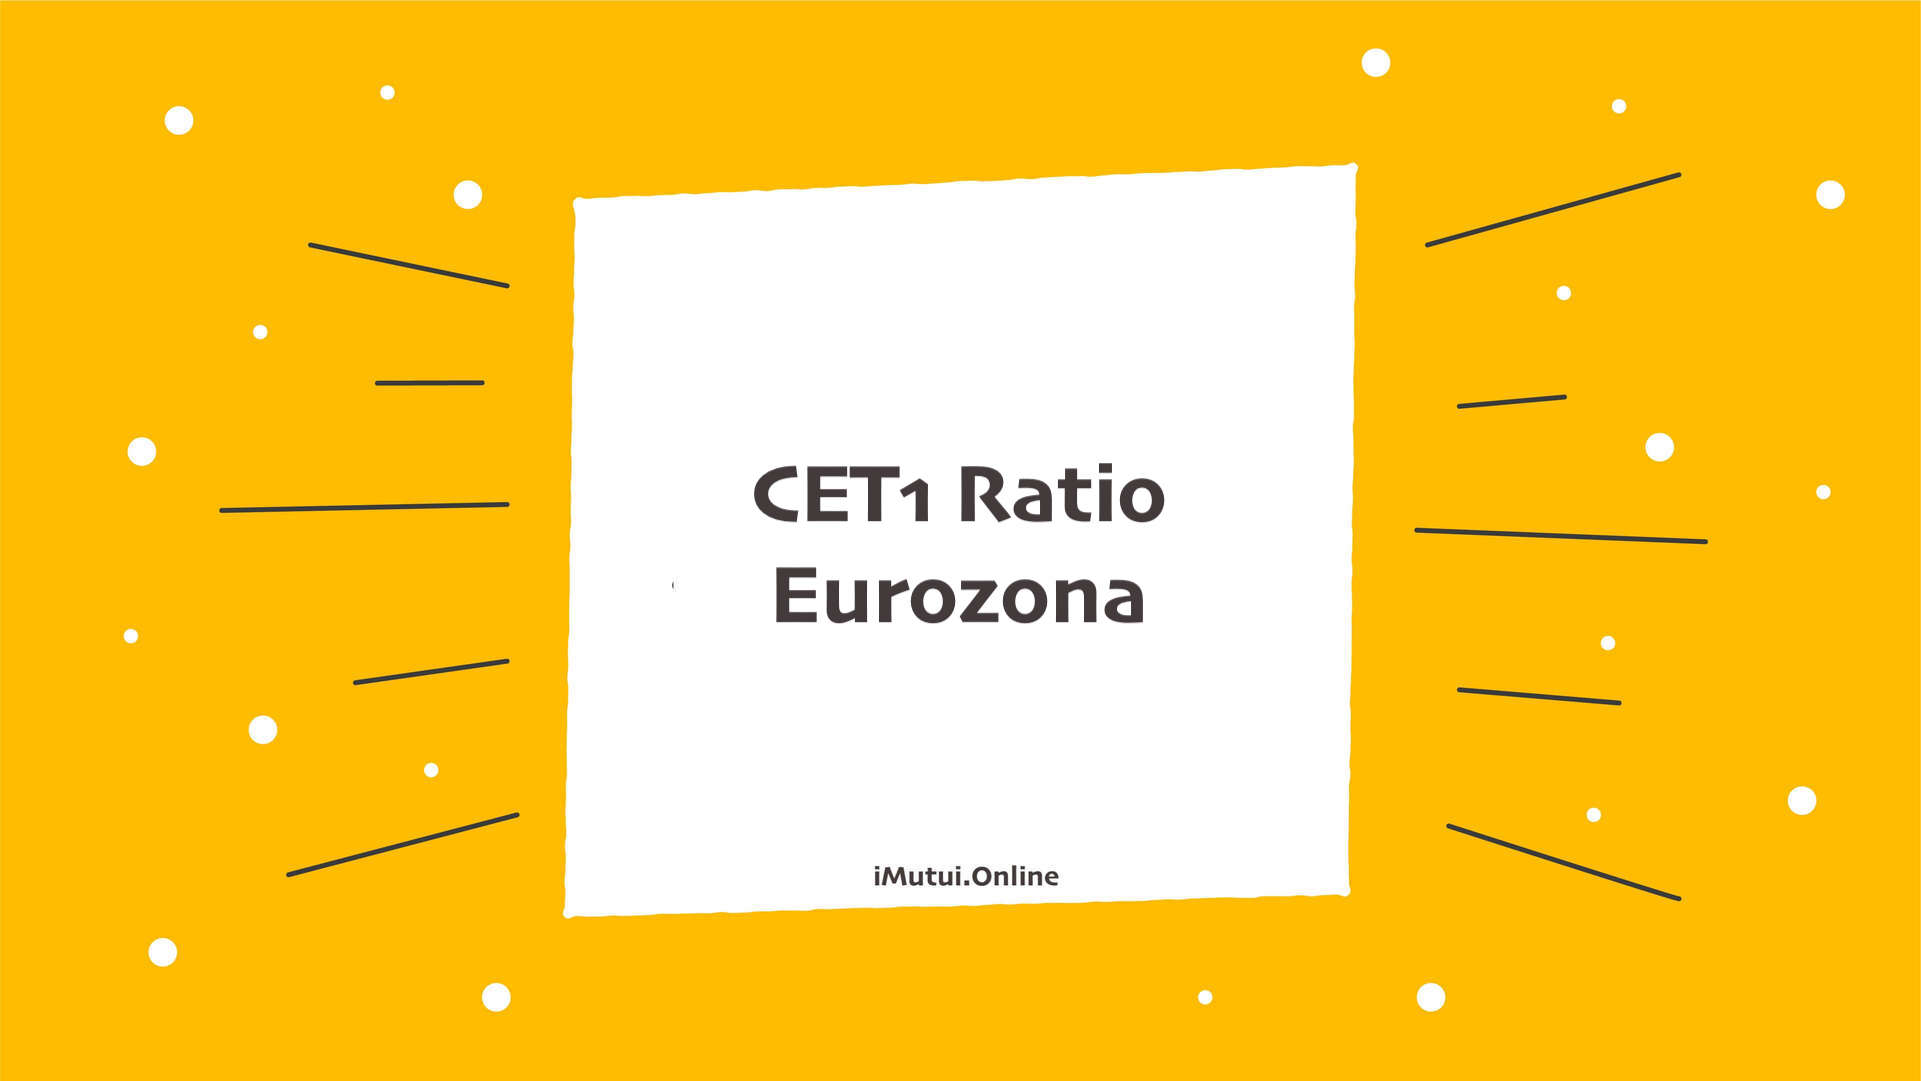 CET1 Ratio Eurozona